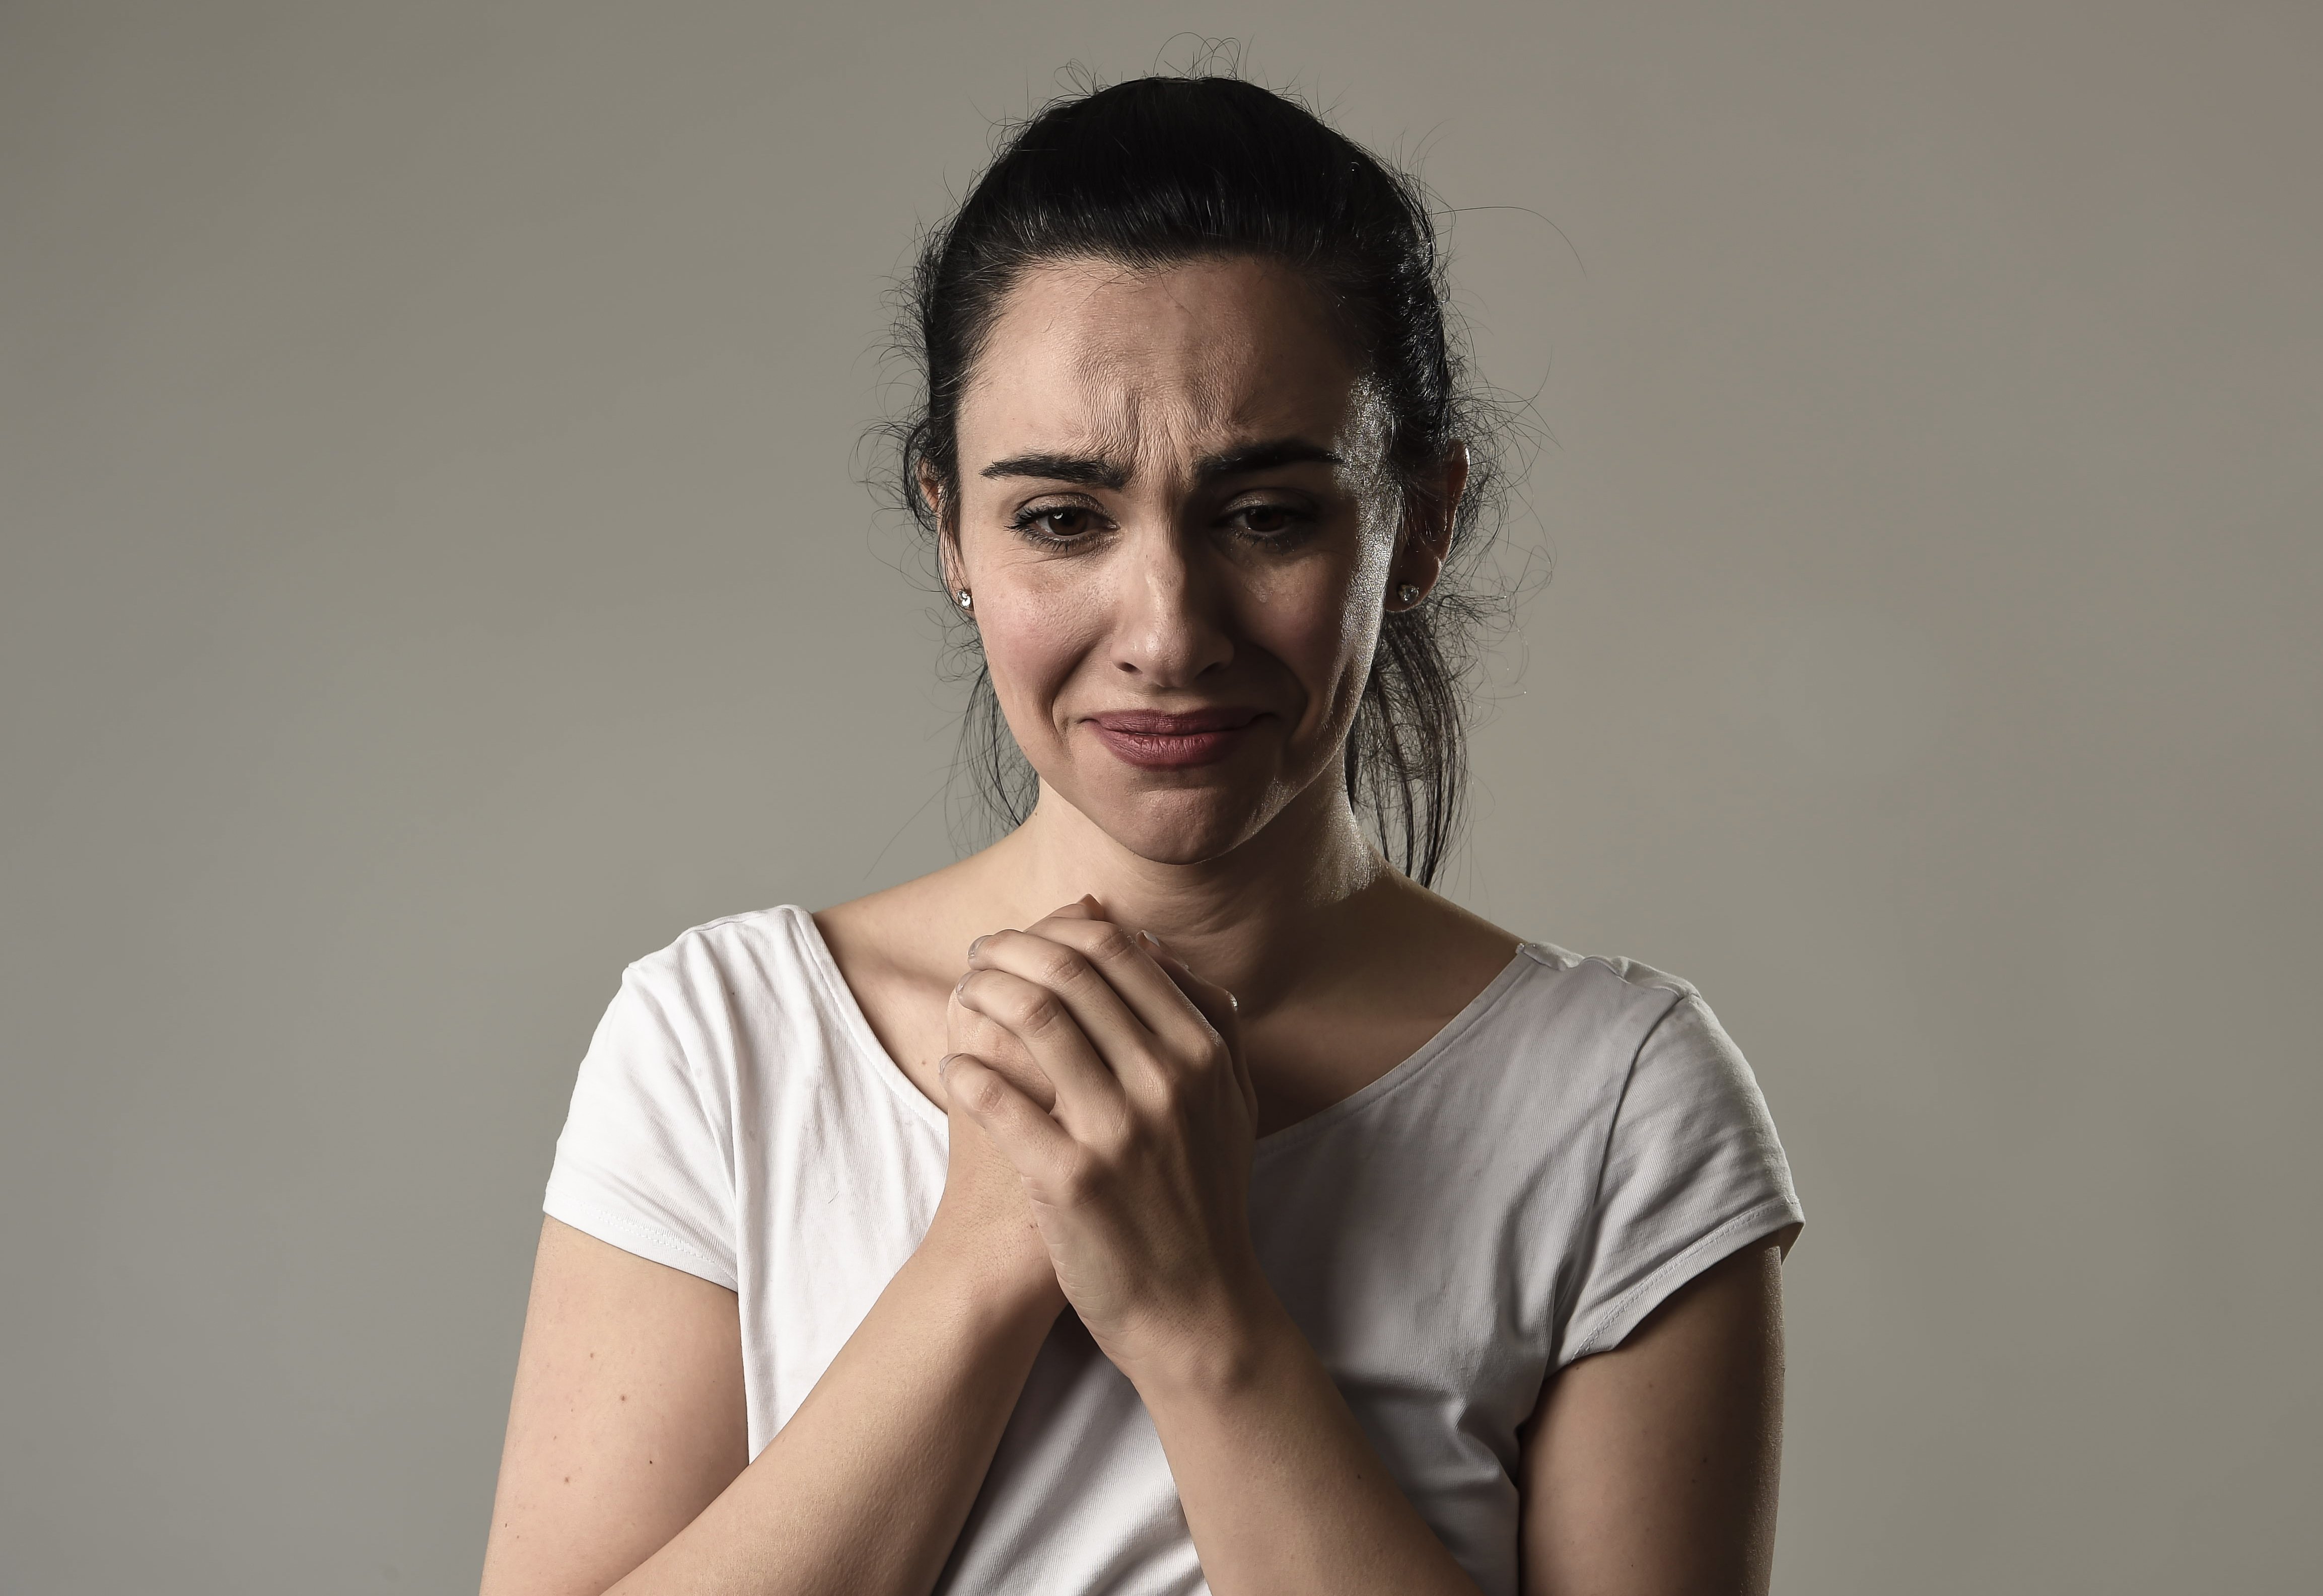 Gesicht der traurigen Frau, die verzweifelt und mit Tränen niedergeschlagen weint | Quelle: Shutterstock